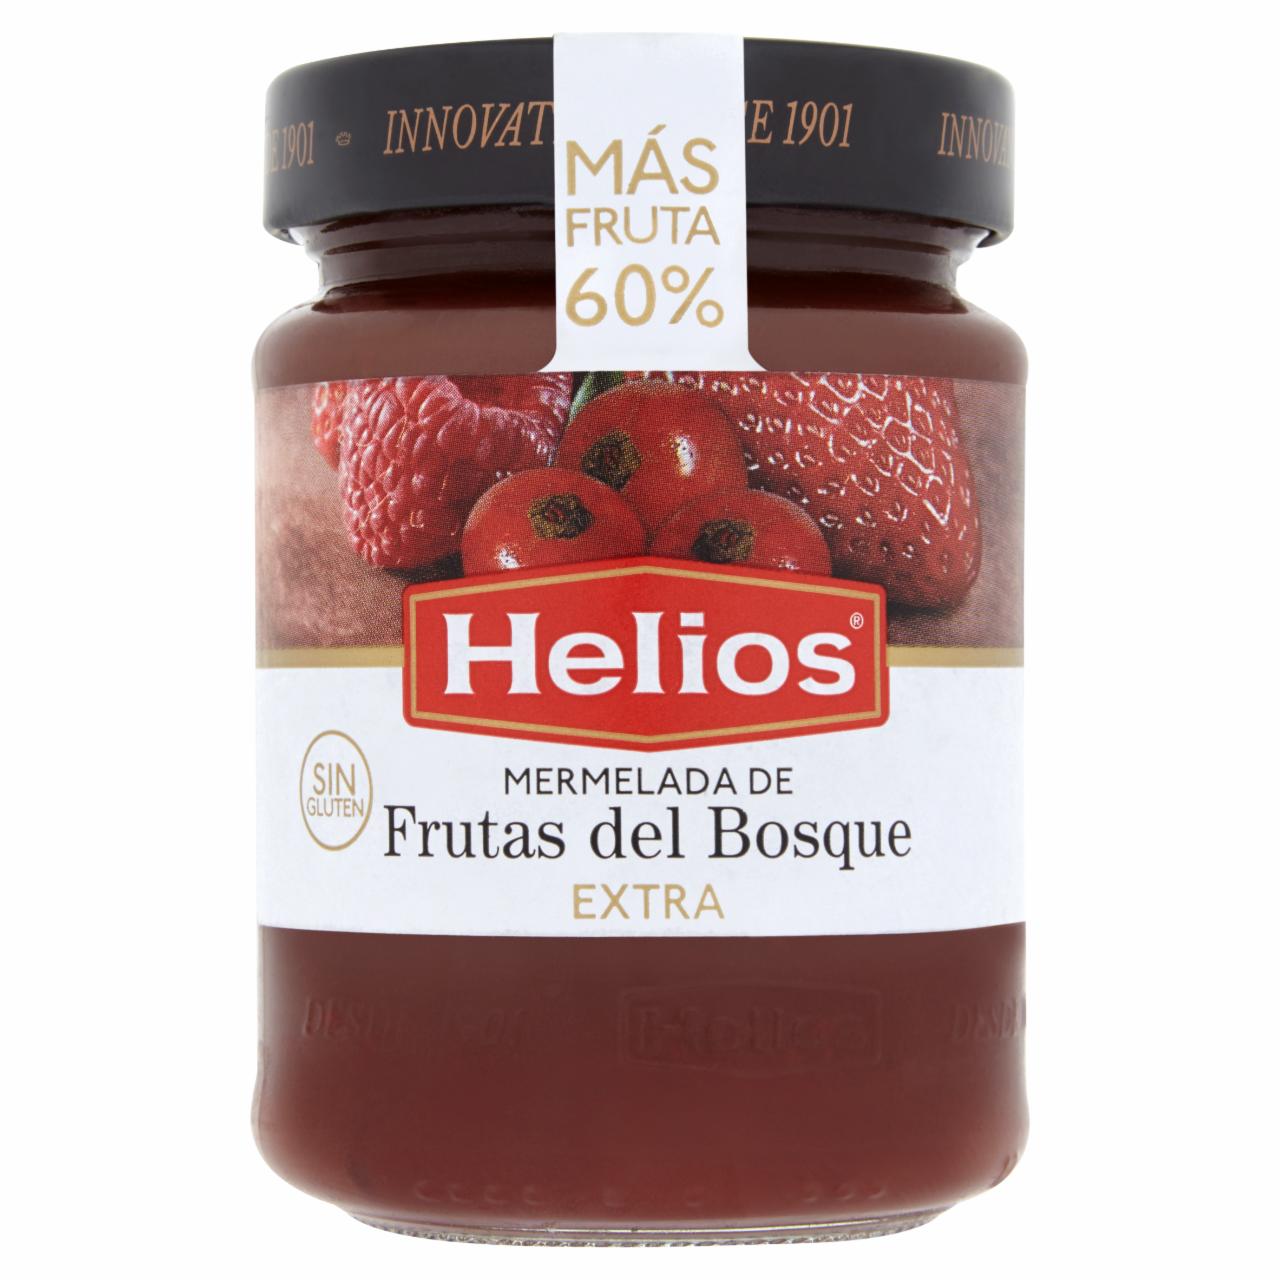 Képek - Helios erdei gyümölcslekvár 340 g